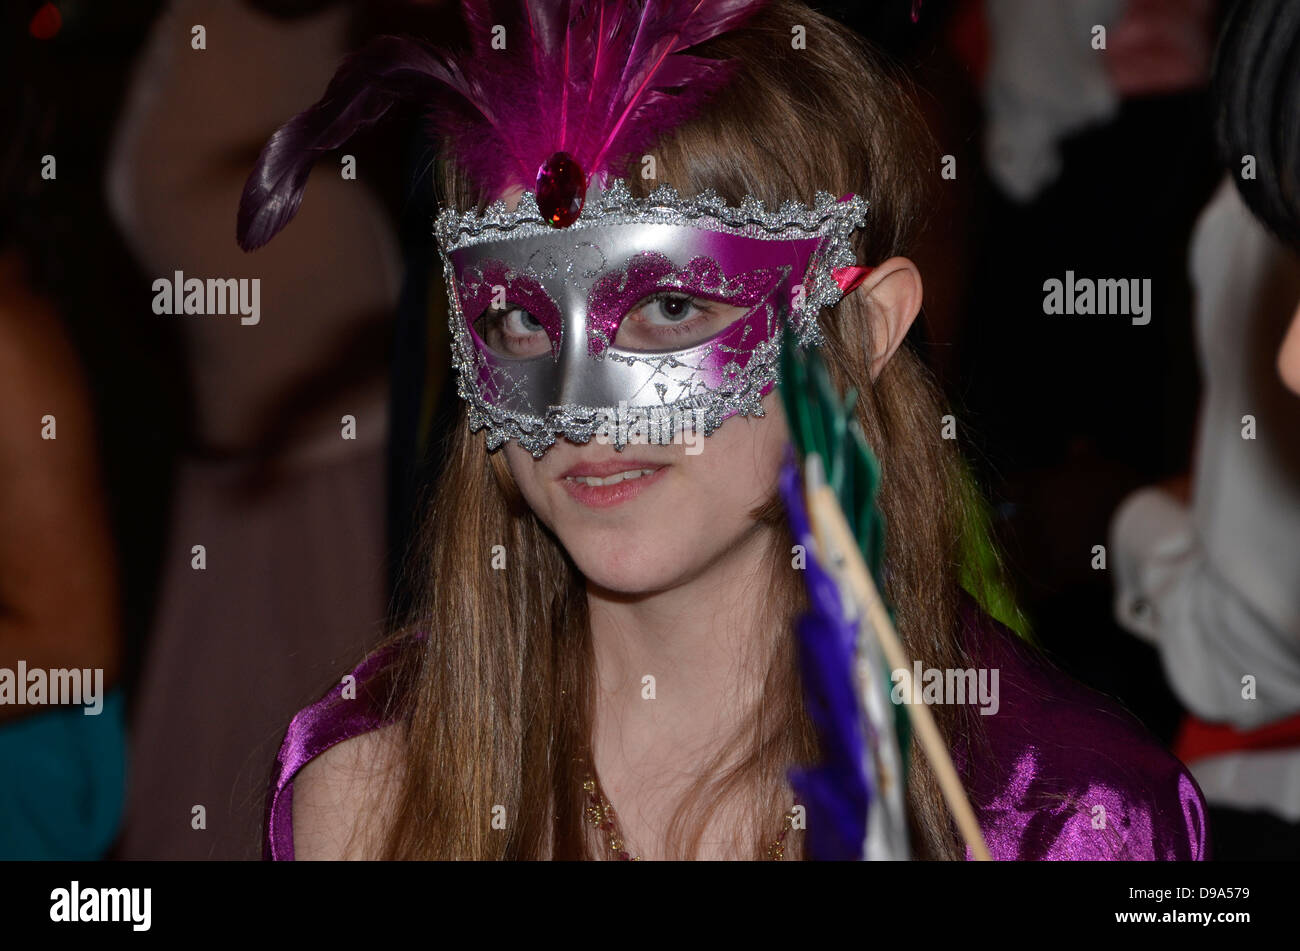 Adolescente con una máscara en una danza de adolescentes Foto de stock